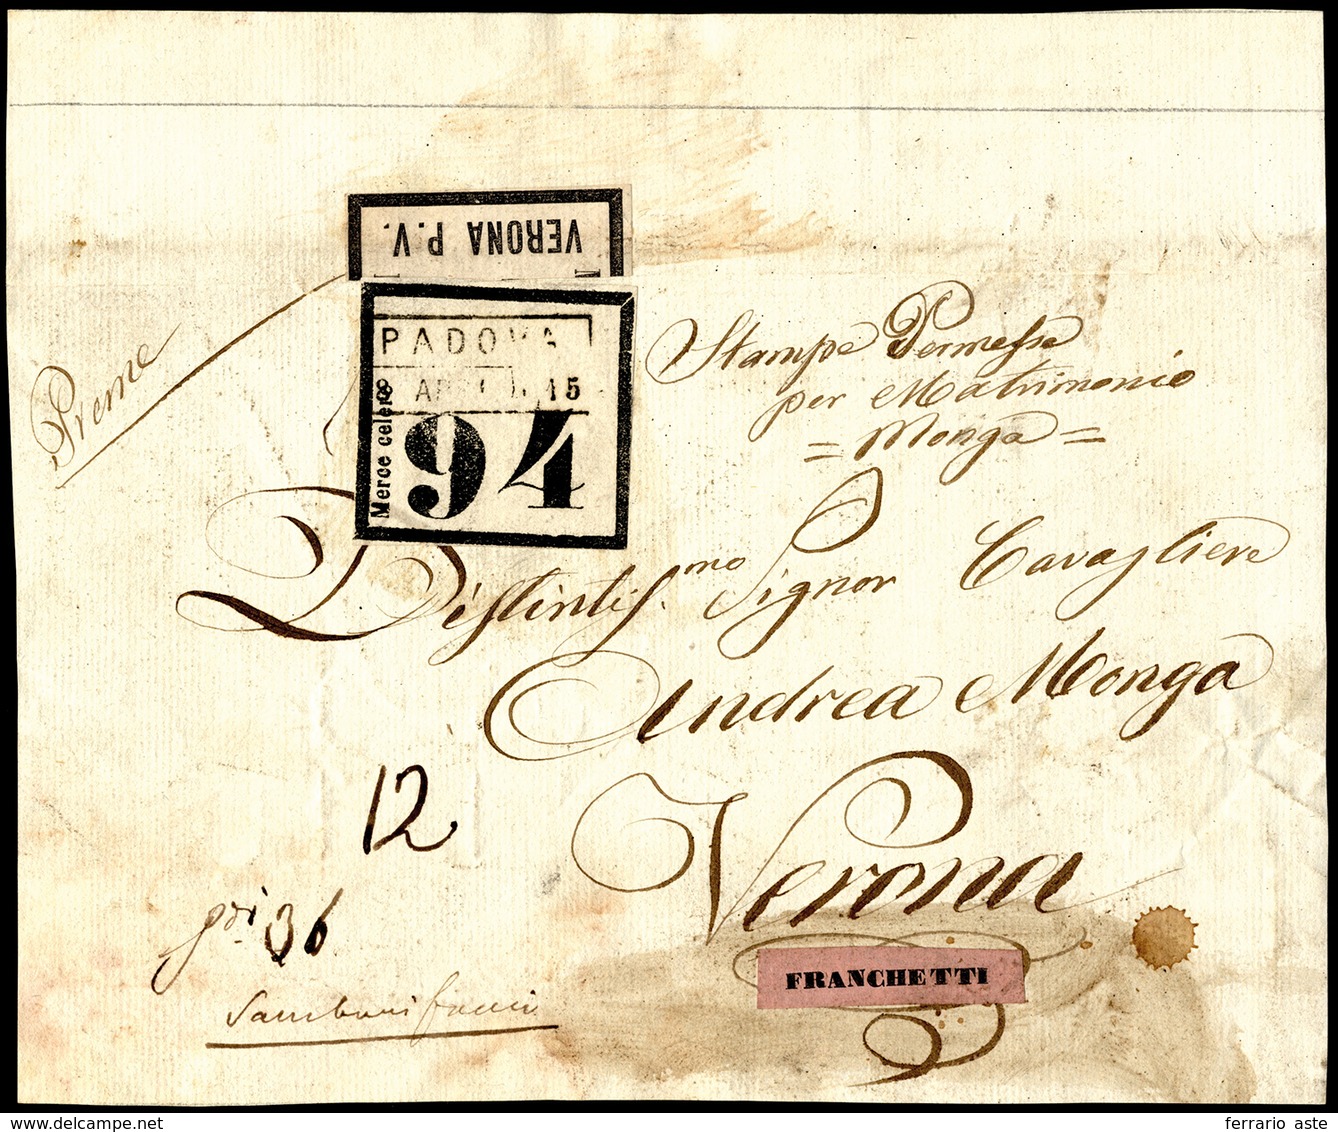 1850 Ca - Frontespizio Di Pacco Da Padova 15/4 A Verona, Etichetta Di "Merce Celere 94" Ed Etichetta... - Lombardy-Venetia